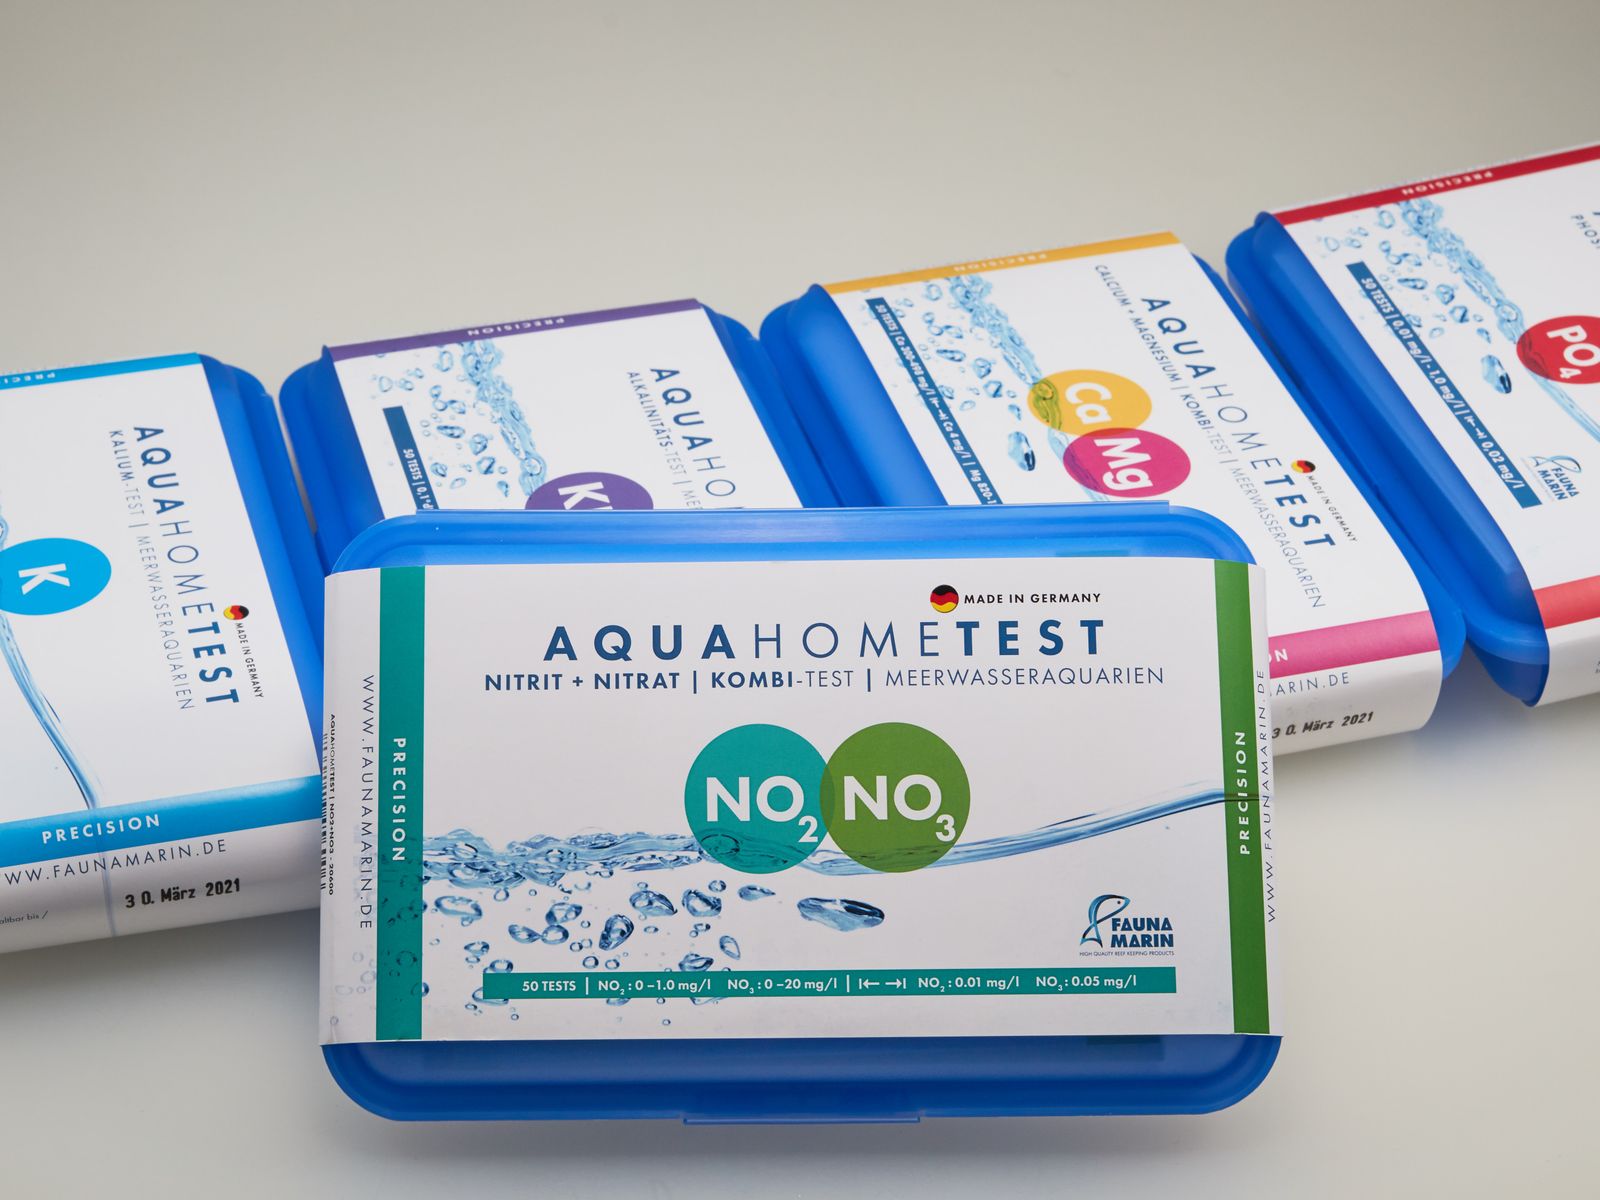 Fauna Marin AquaHomeTest NO2+NO3: Nitrit + Nitrat | Kombi-Test für Meerwasseraquarien